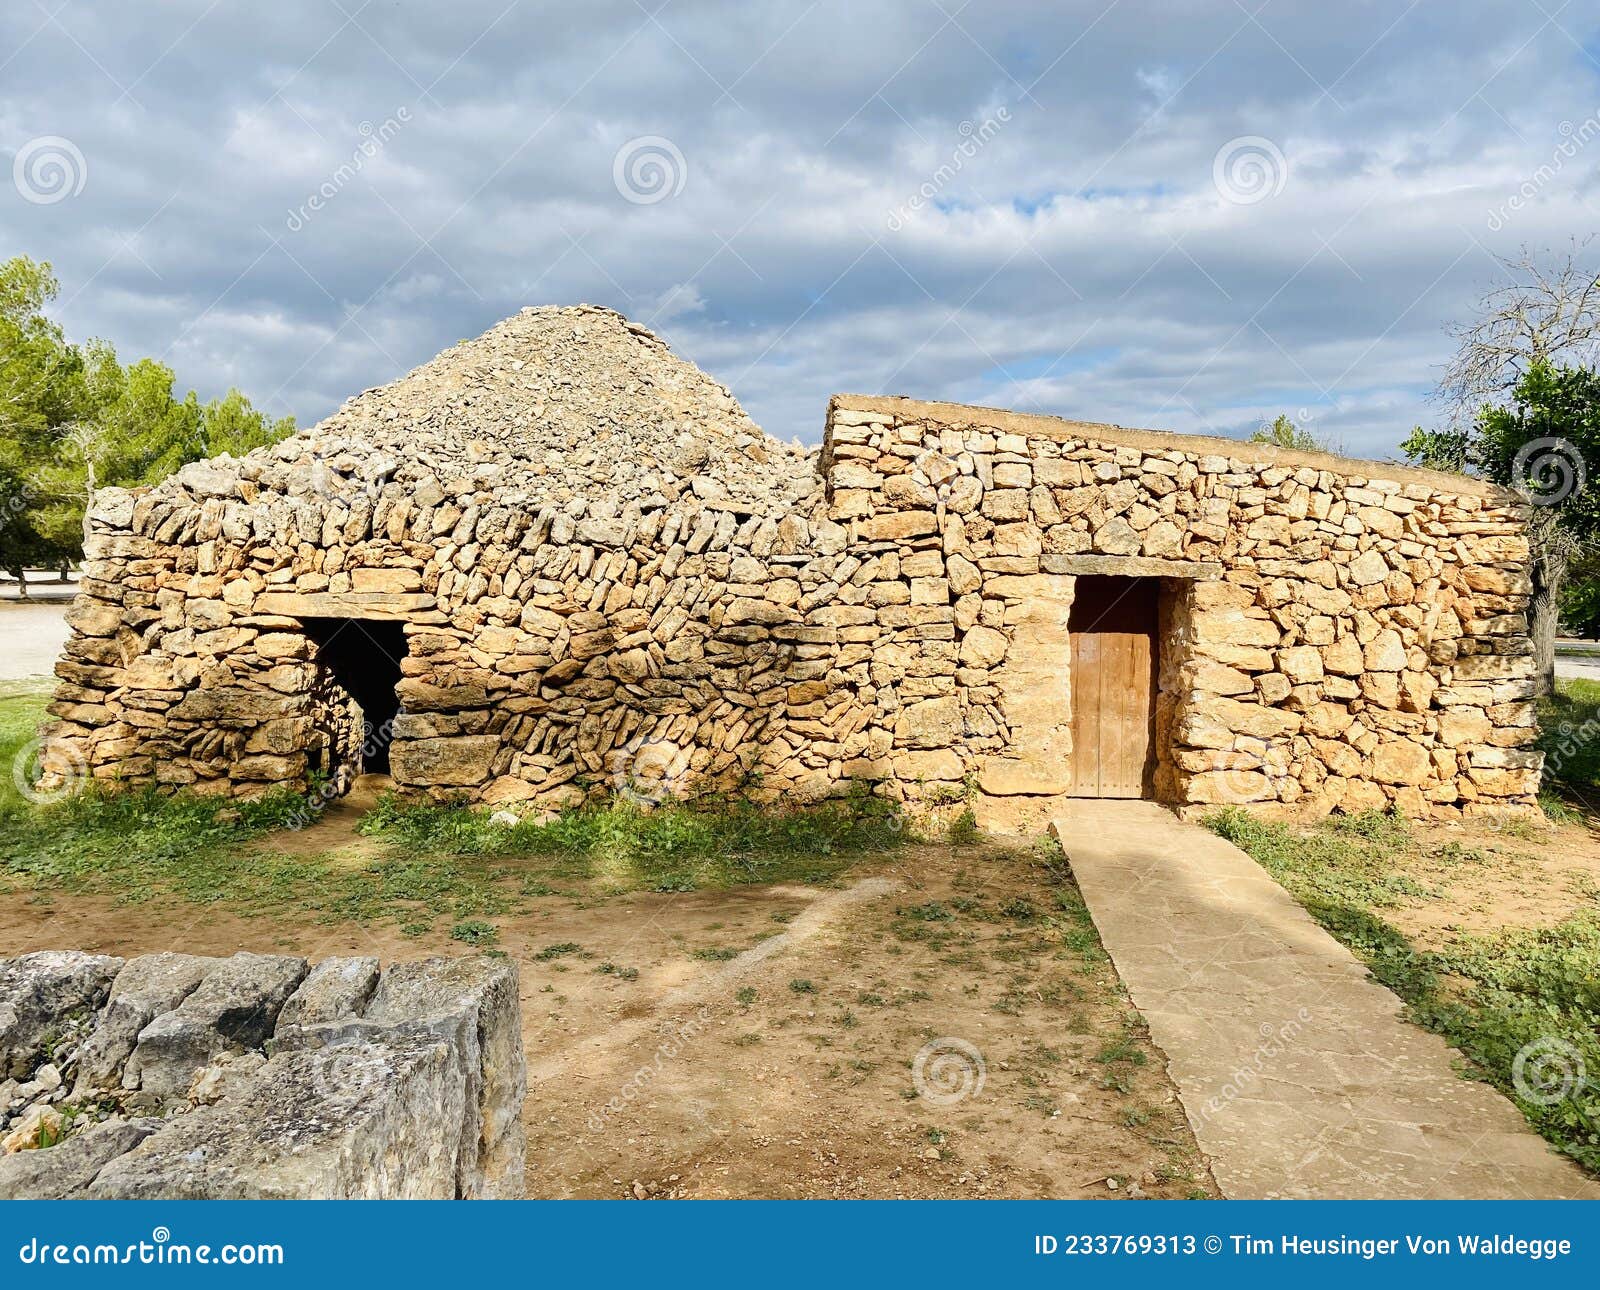 barraca, dry-stone built shepherdÃ¢â¬â¢s hut, mallorca, baleares, spain